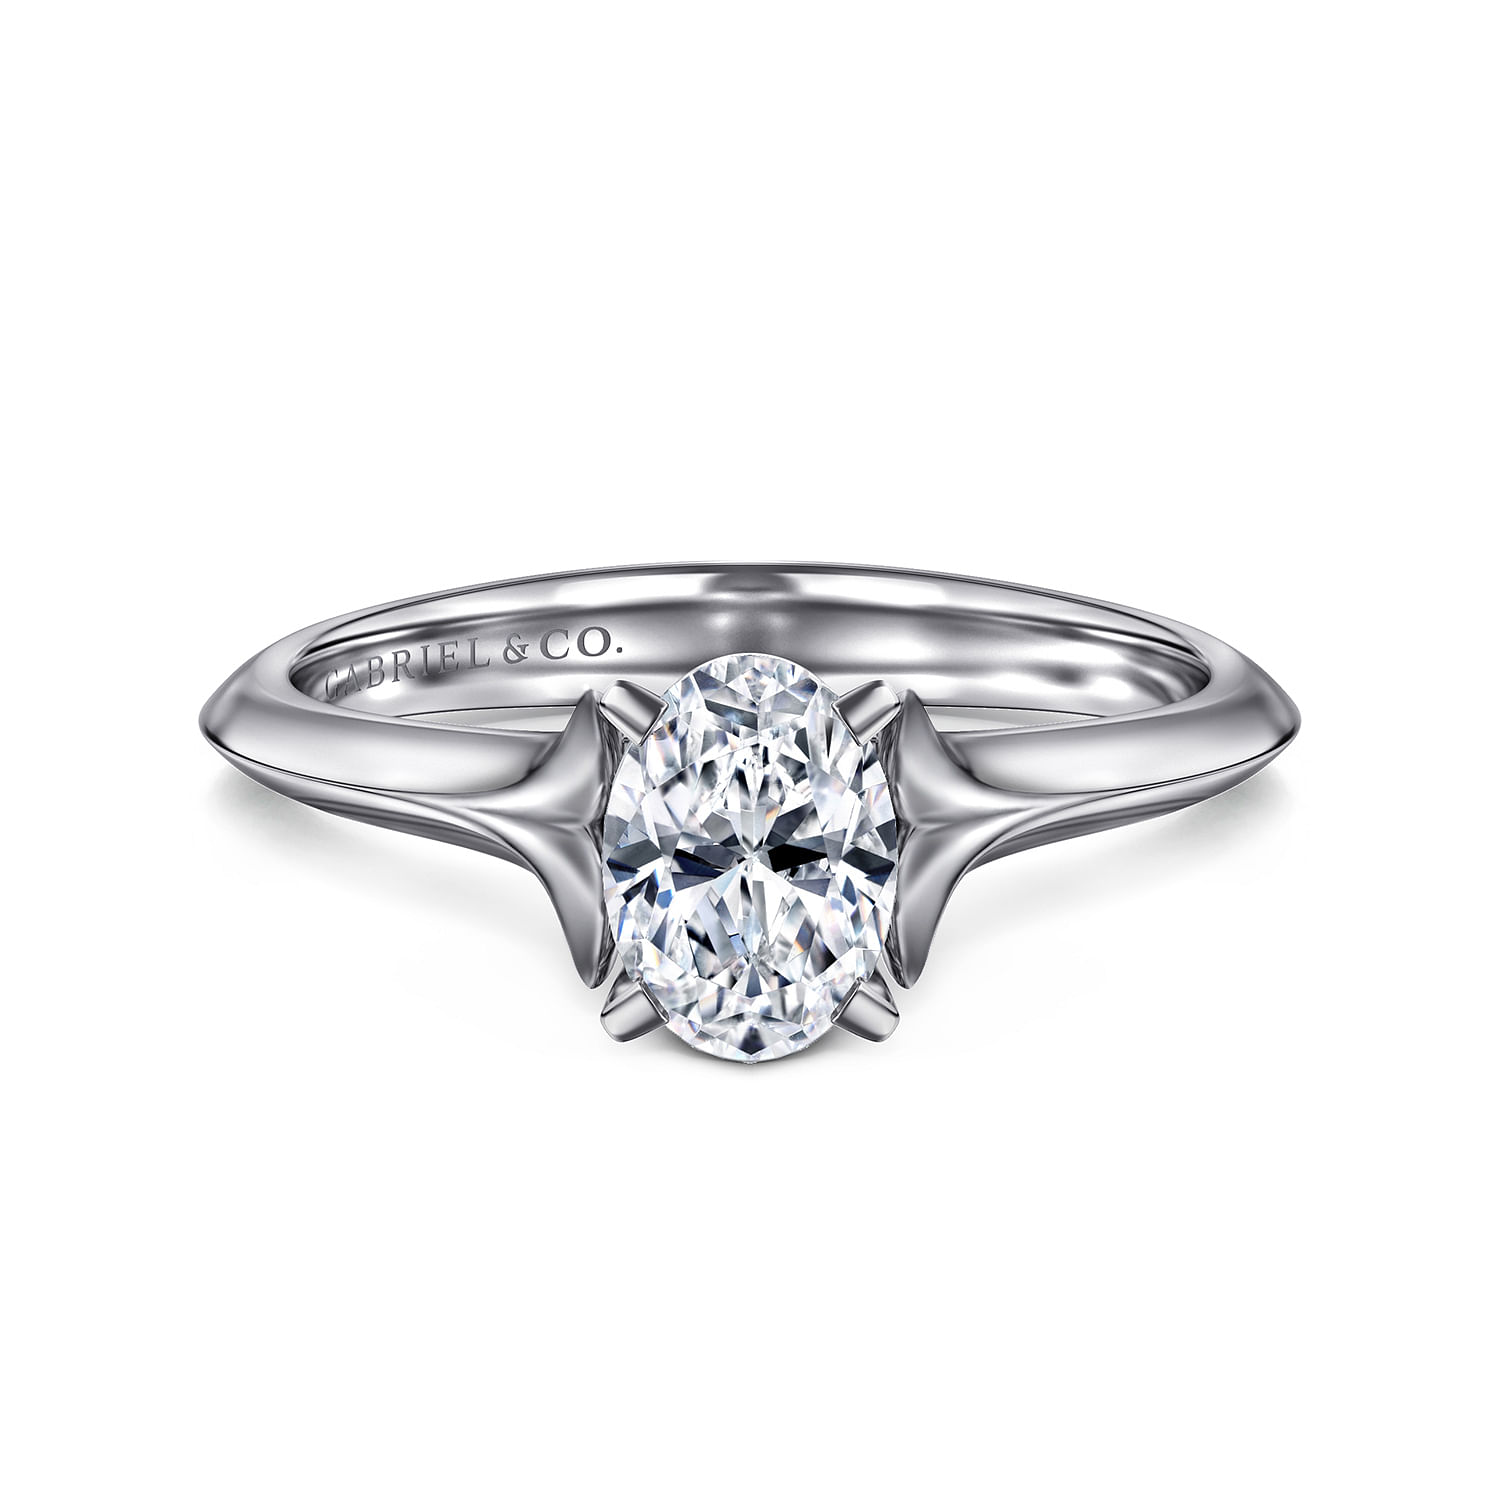 Ellis - 14K White Gold Oval Diamond Engagement Ring